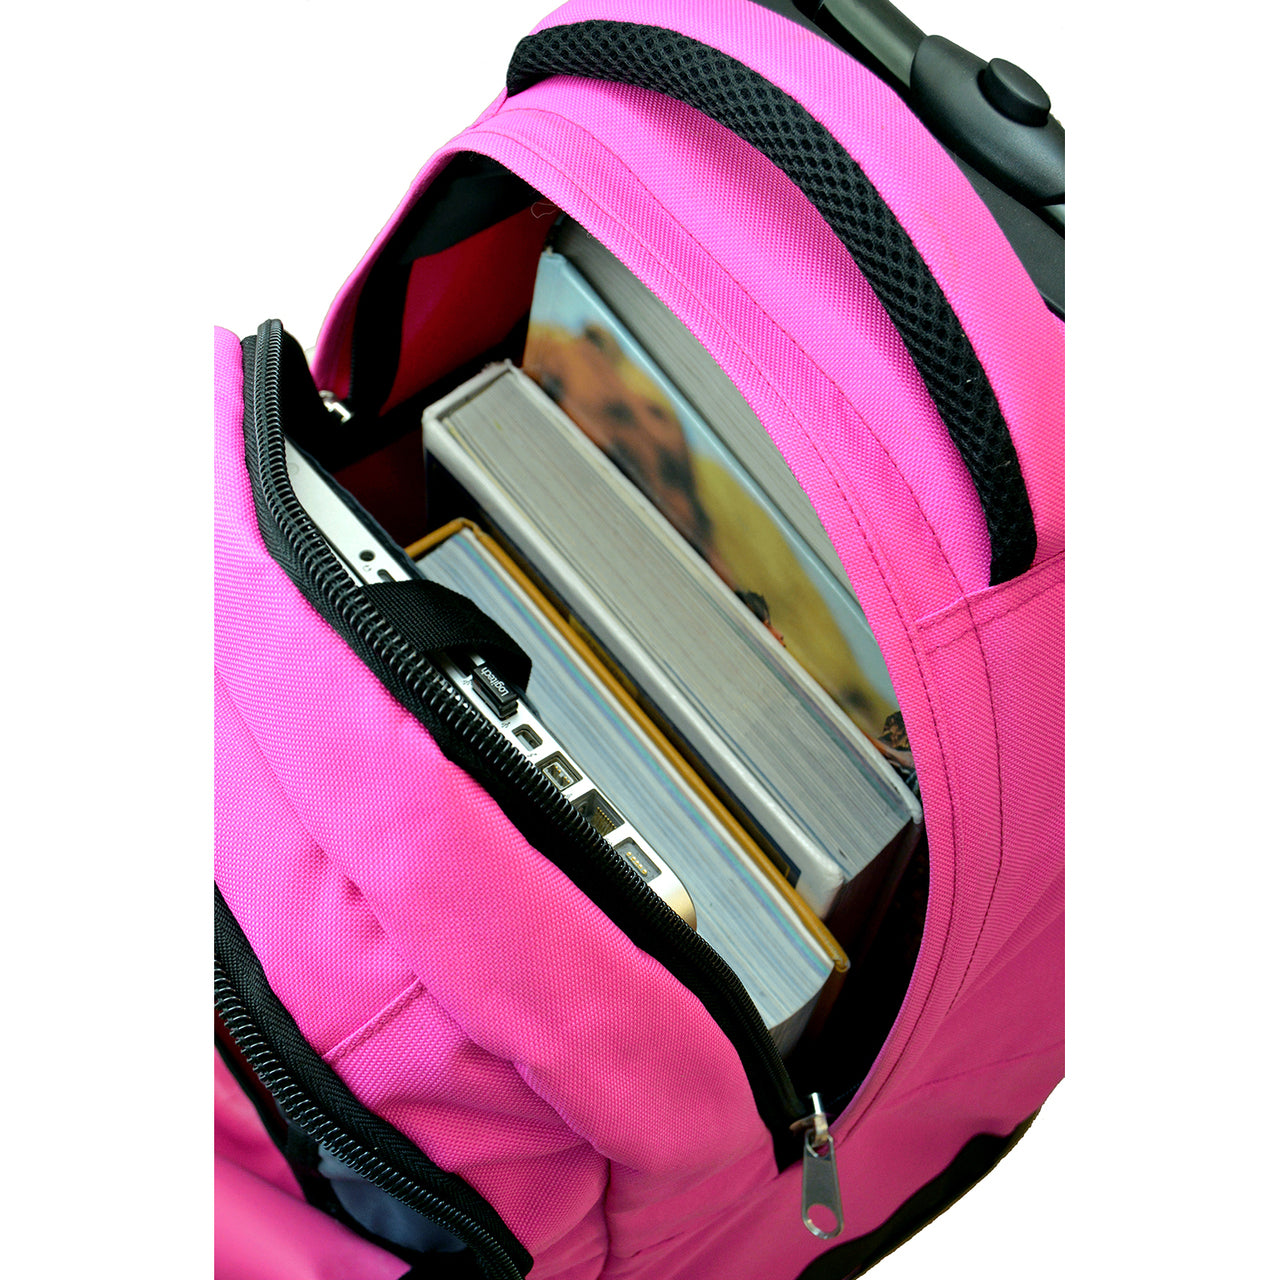 Las Vegas Raiders Premium Wheeled Backpack in Pink